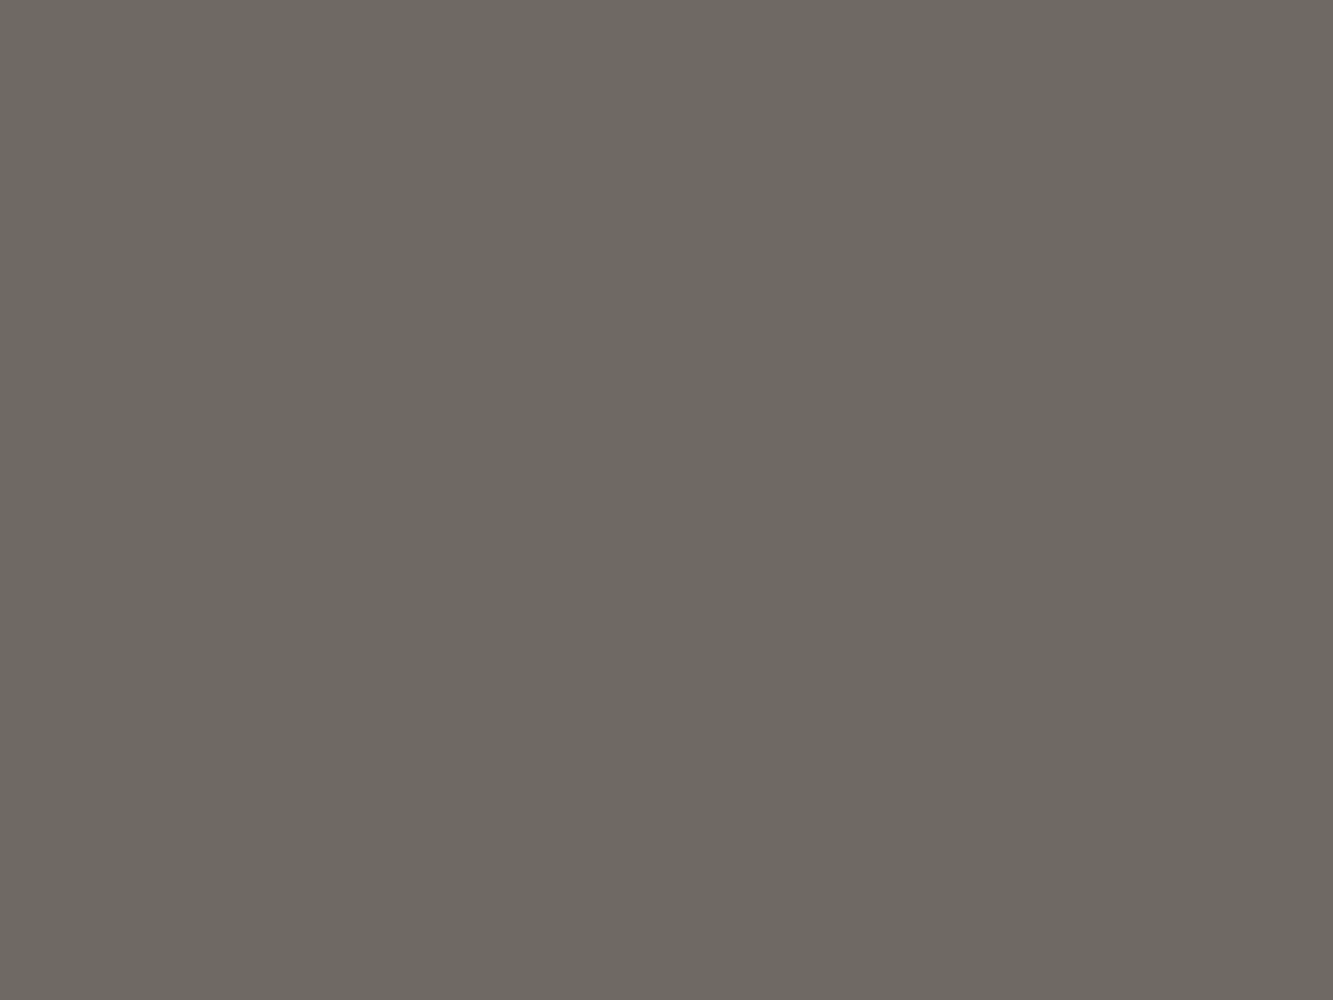 Михаил Бочаров. Извещение о мире (фрагмент). 1872. Государственный Русский музей, Санкт-Петербург